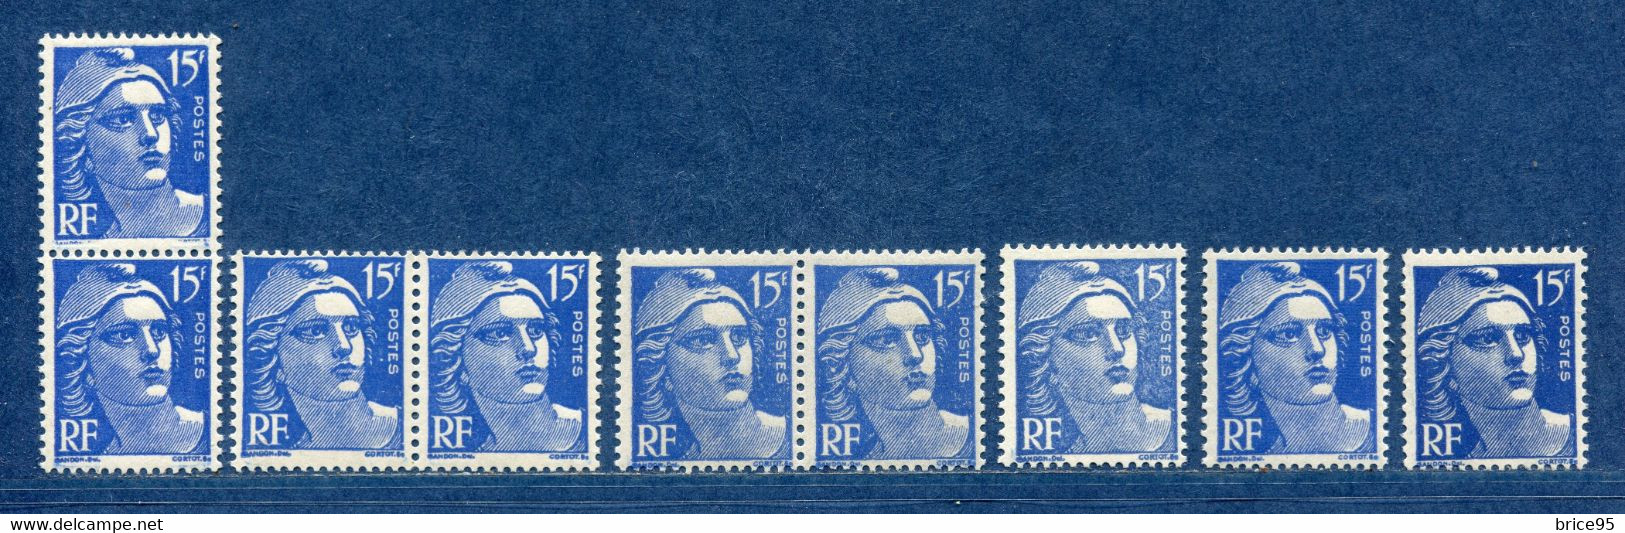 ⭐ France - Variété - YT N° 886 - Couleurs - Pétouilles - Neuf Sans Charnière - 1951 ⭐ - Unused Stamps